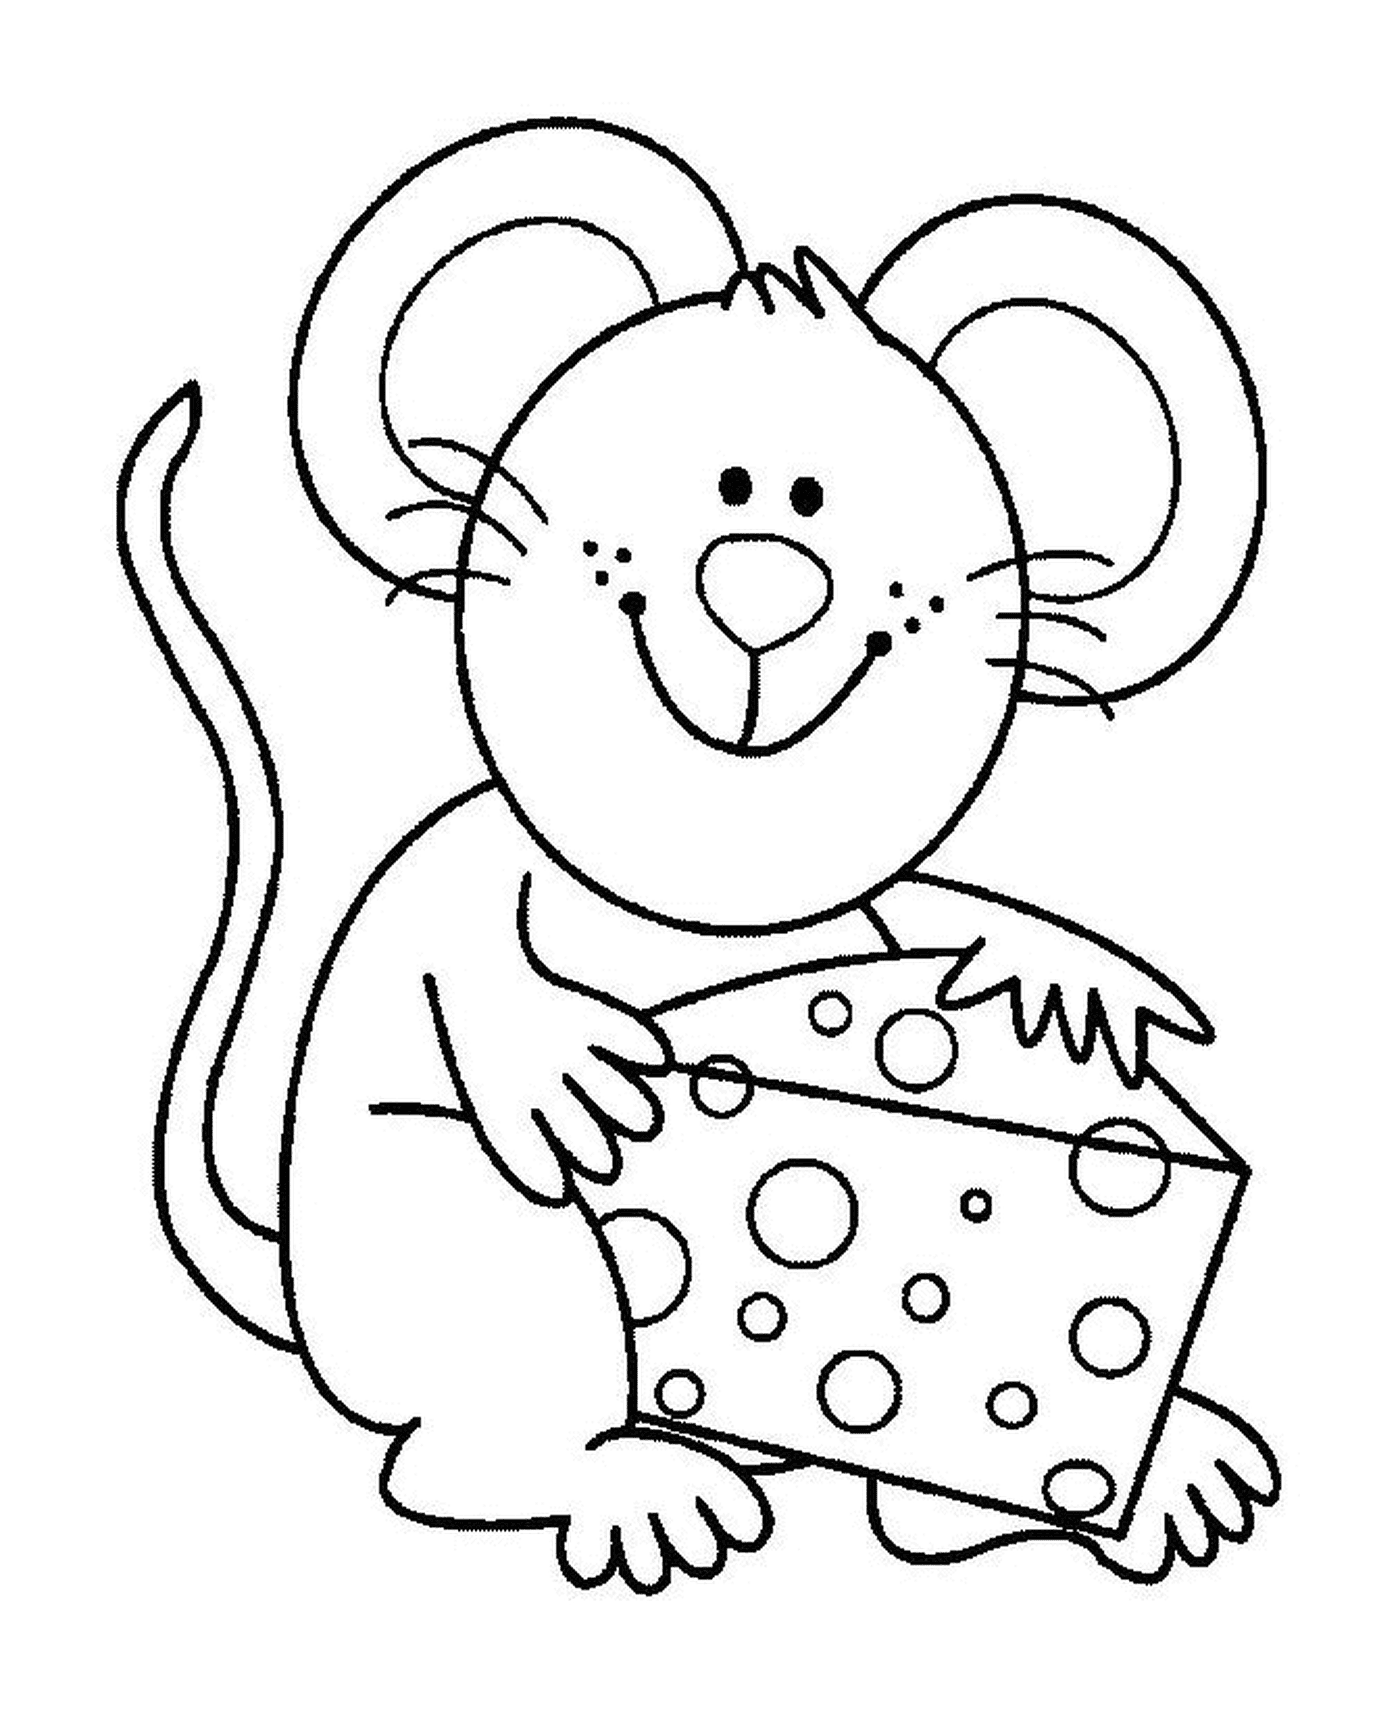  Eine Maus mit gutem Käse 